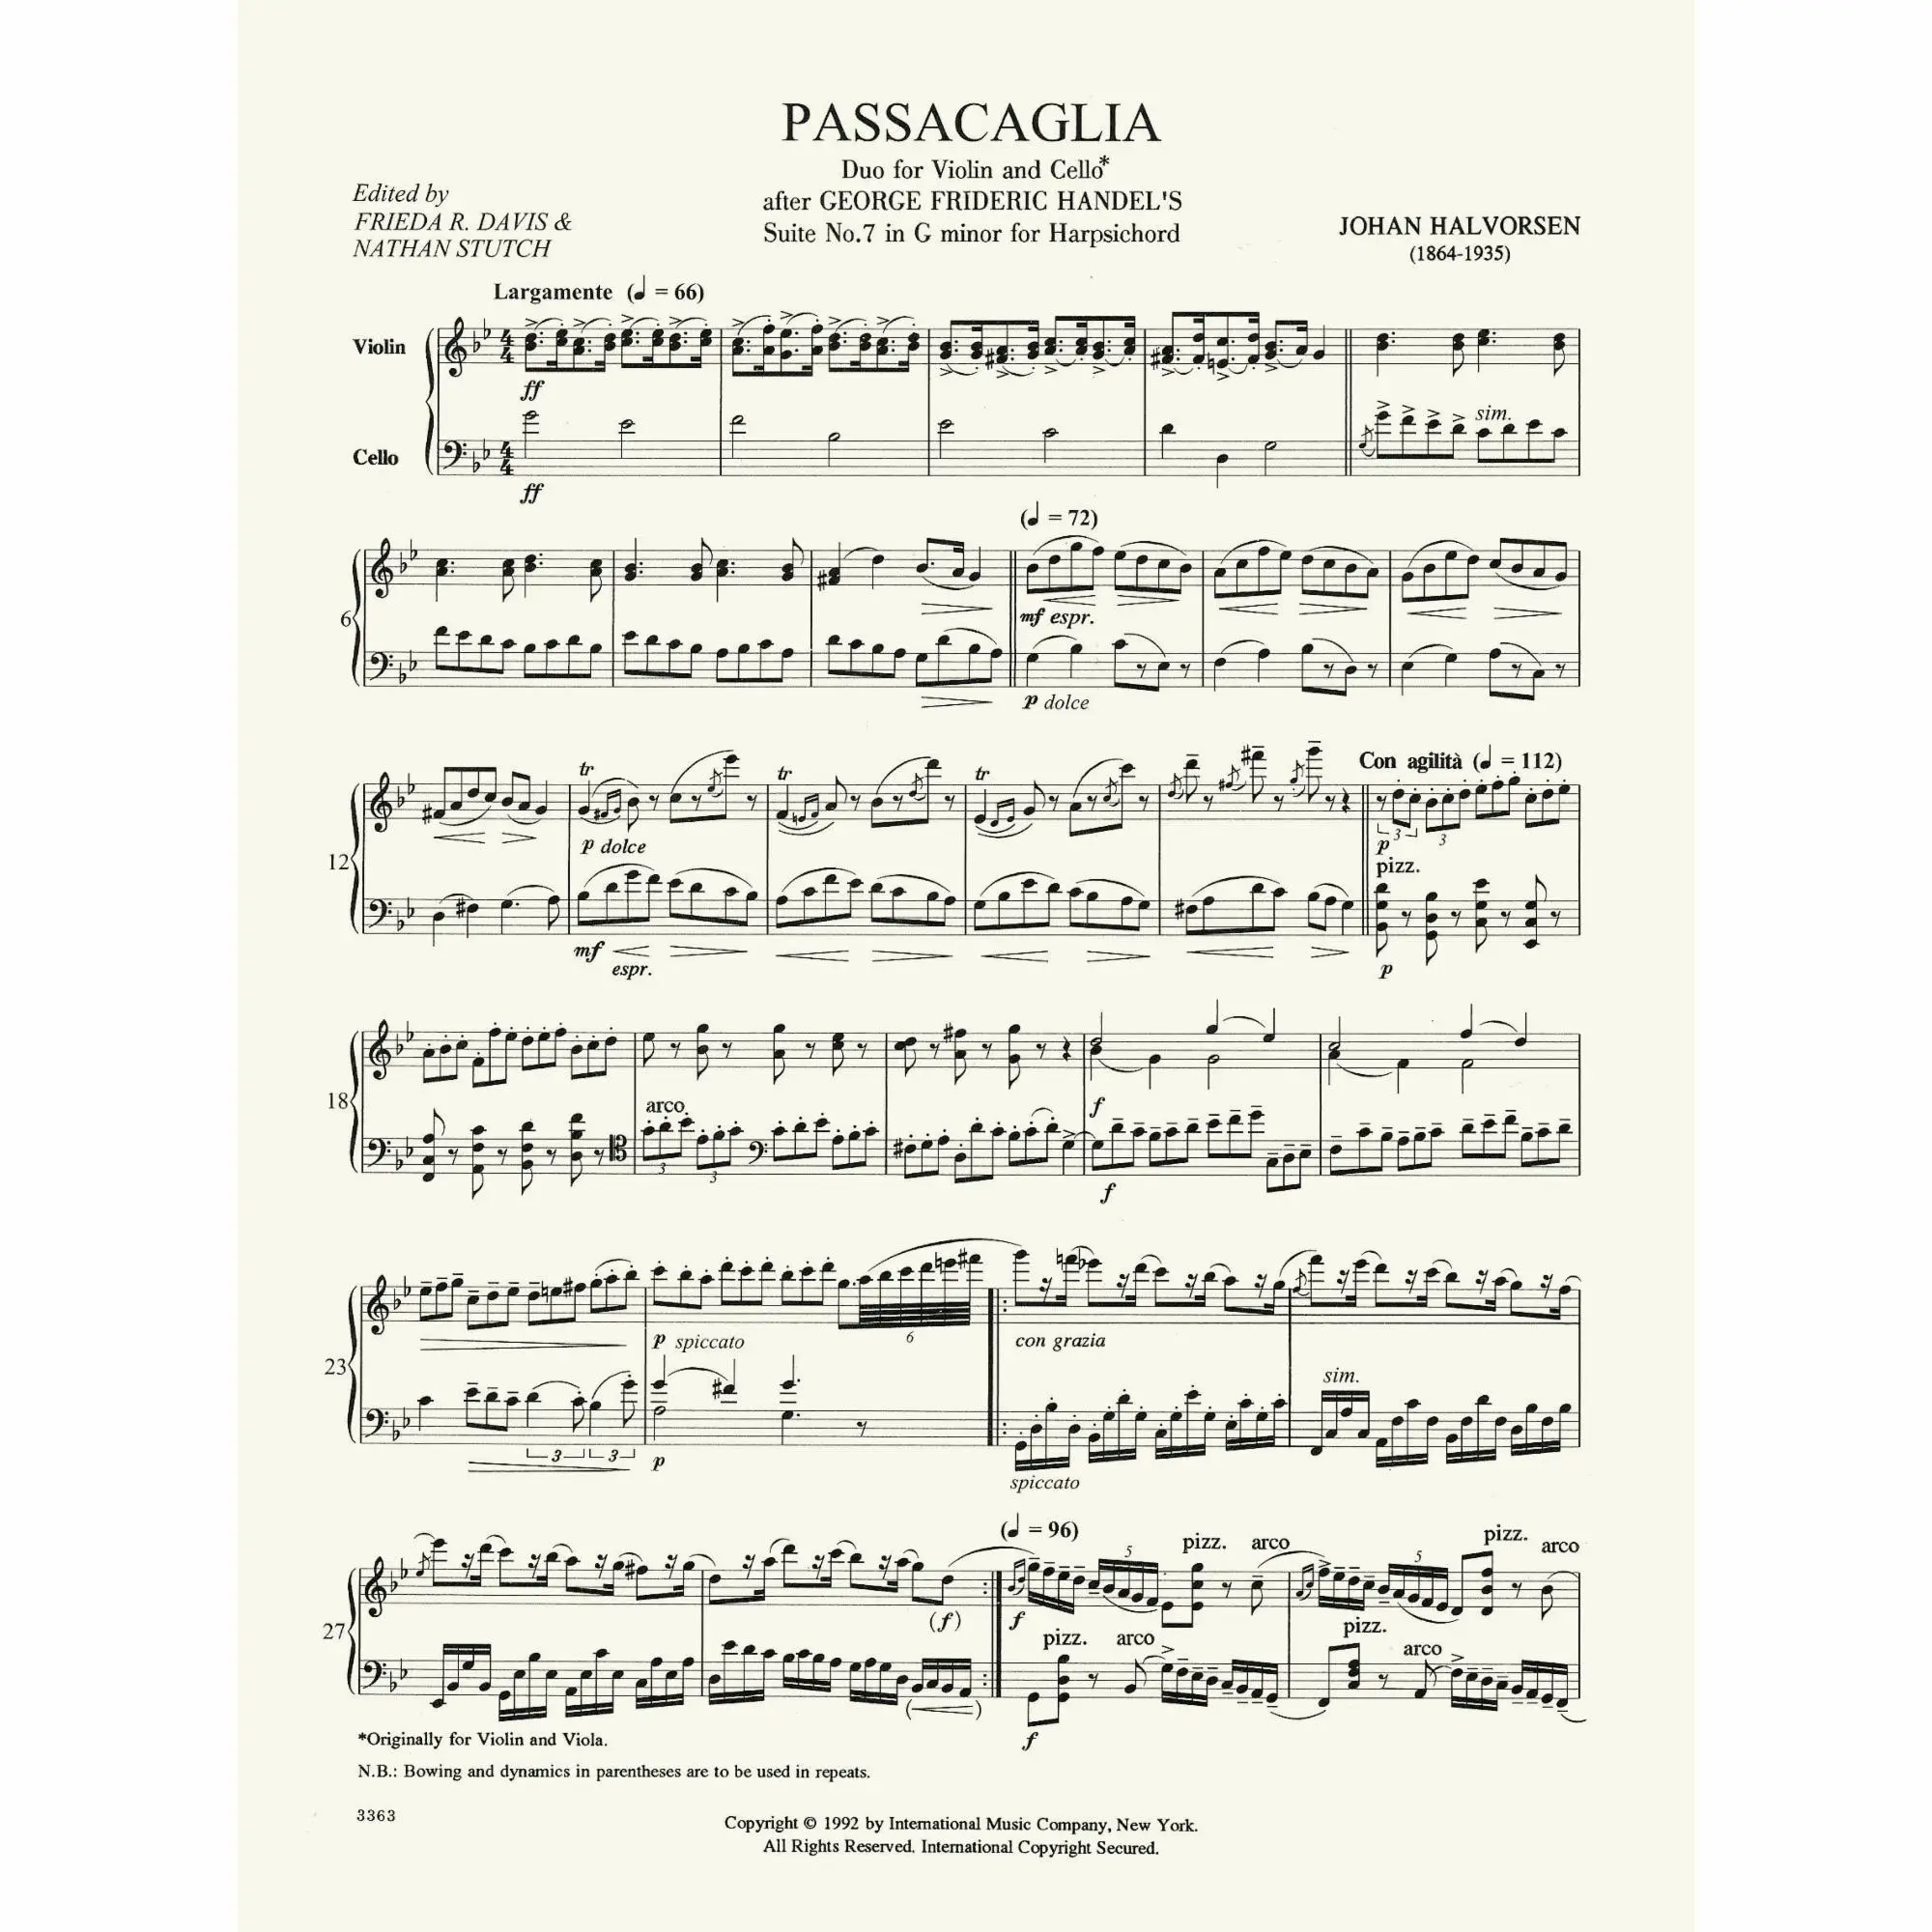 passacaglia violin and cello - Who wrote Passacaglia for violin and viola